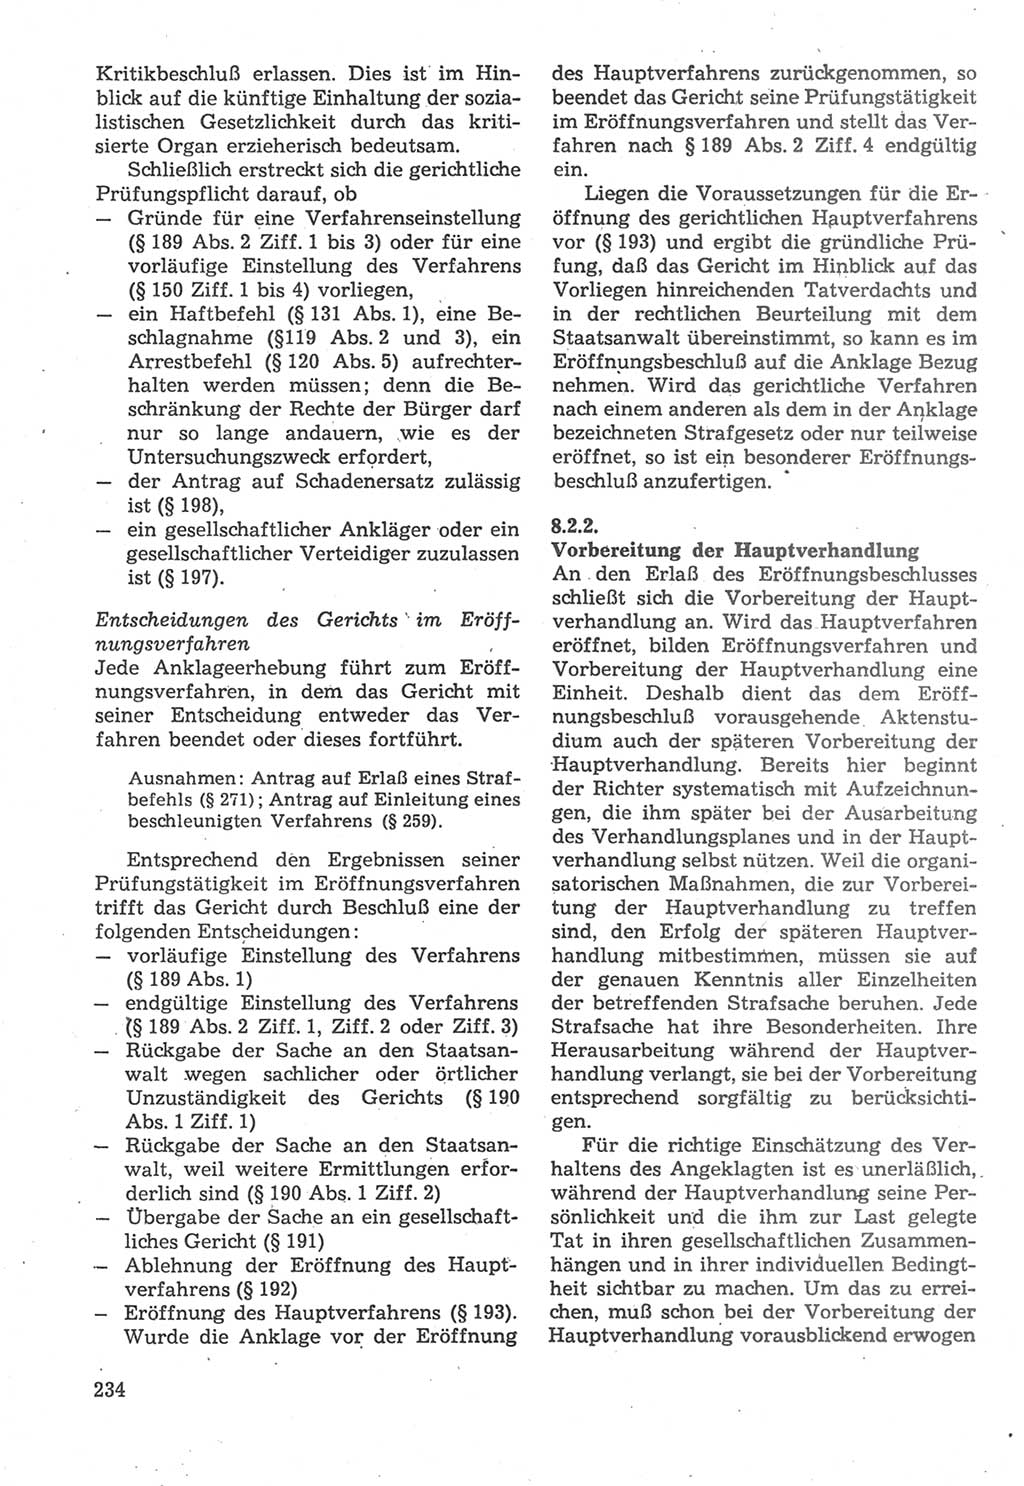 Strafverfahrensrecht [Deutsche Demokratische Republik (DDR)], Lehrbuch 1987, Seite 234 (Strafverf.-R. DDR Lb. 1987, S. 234)